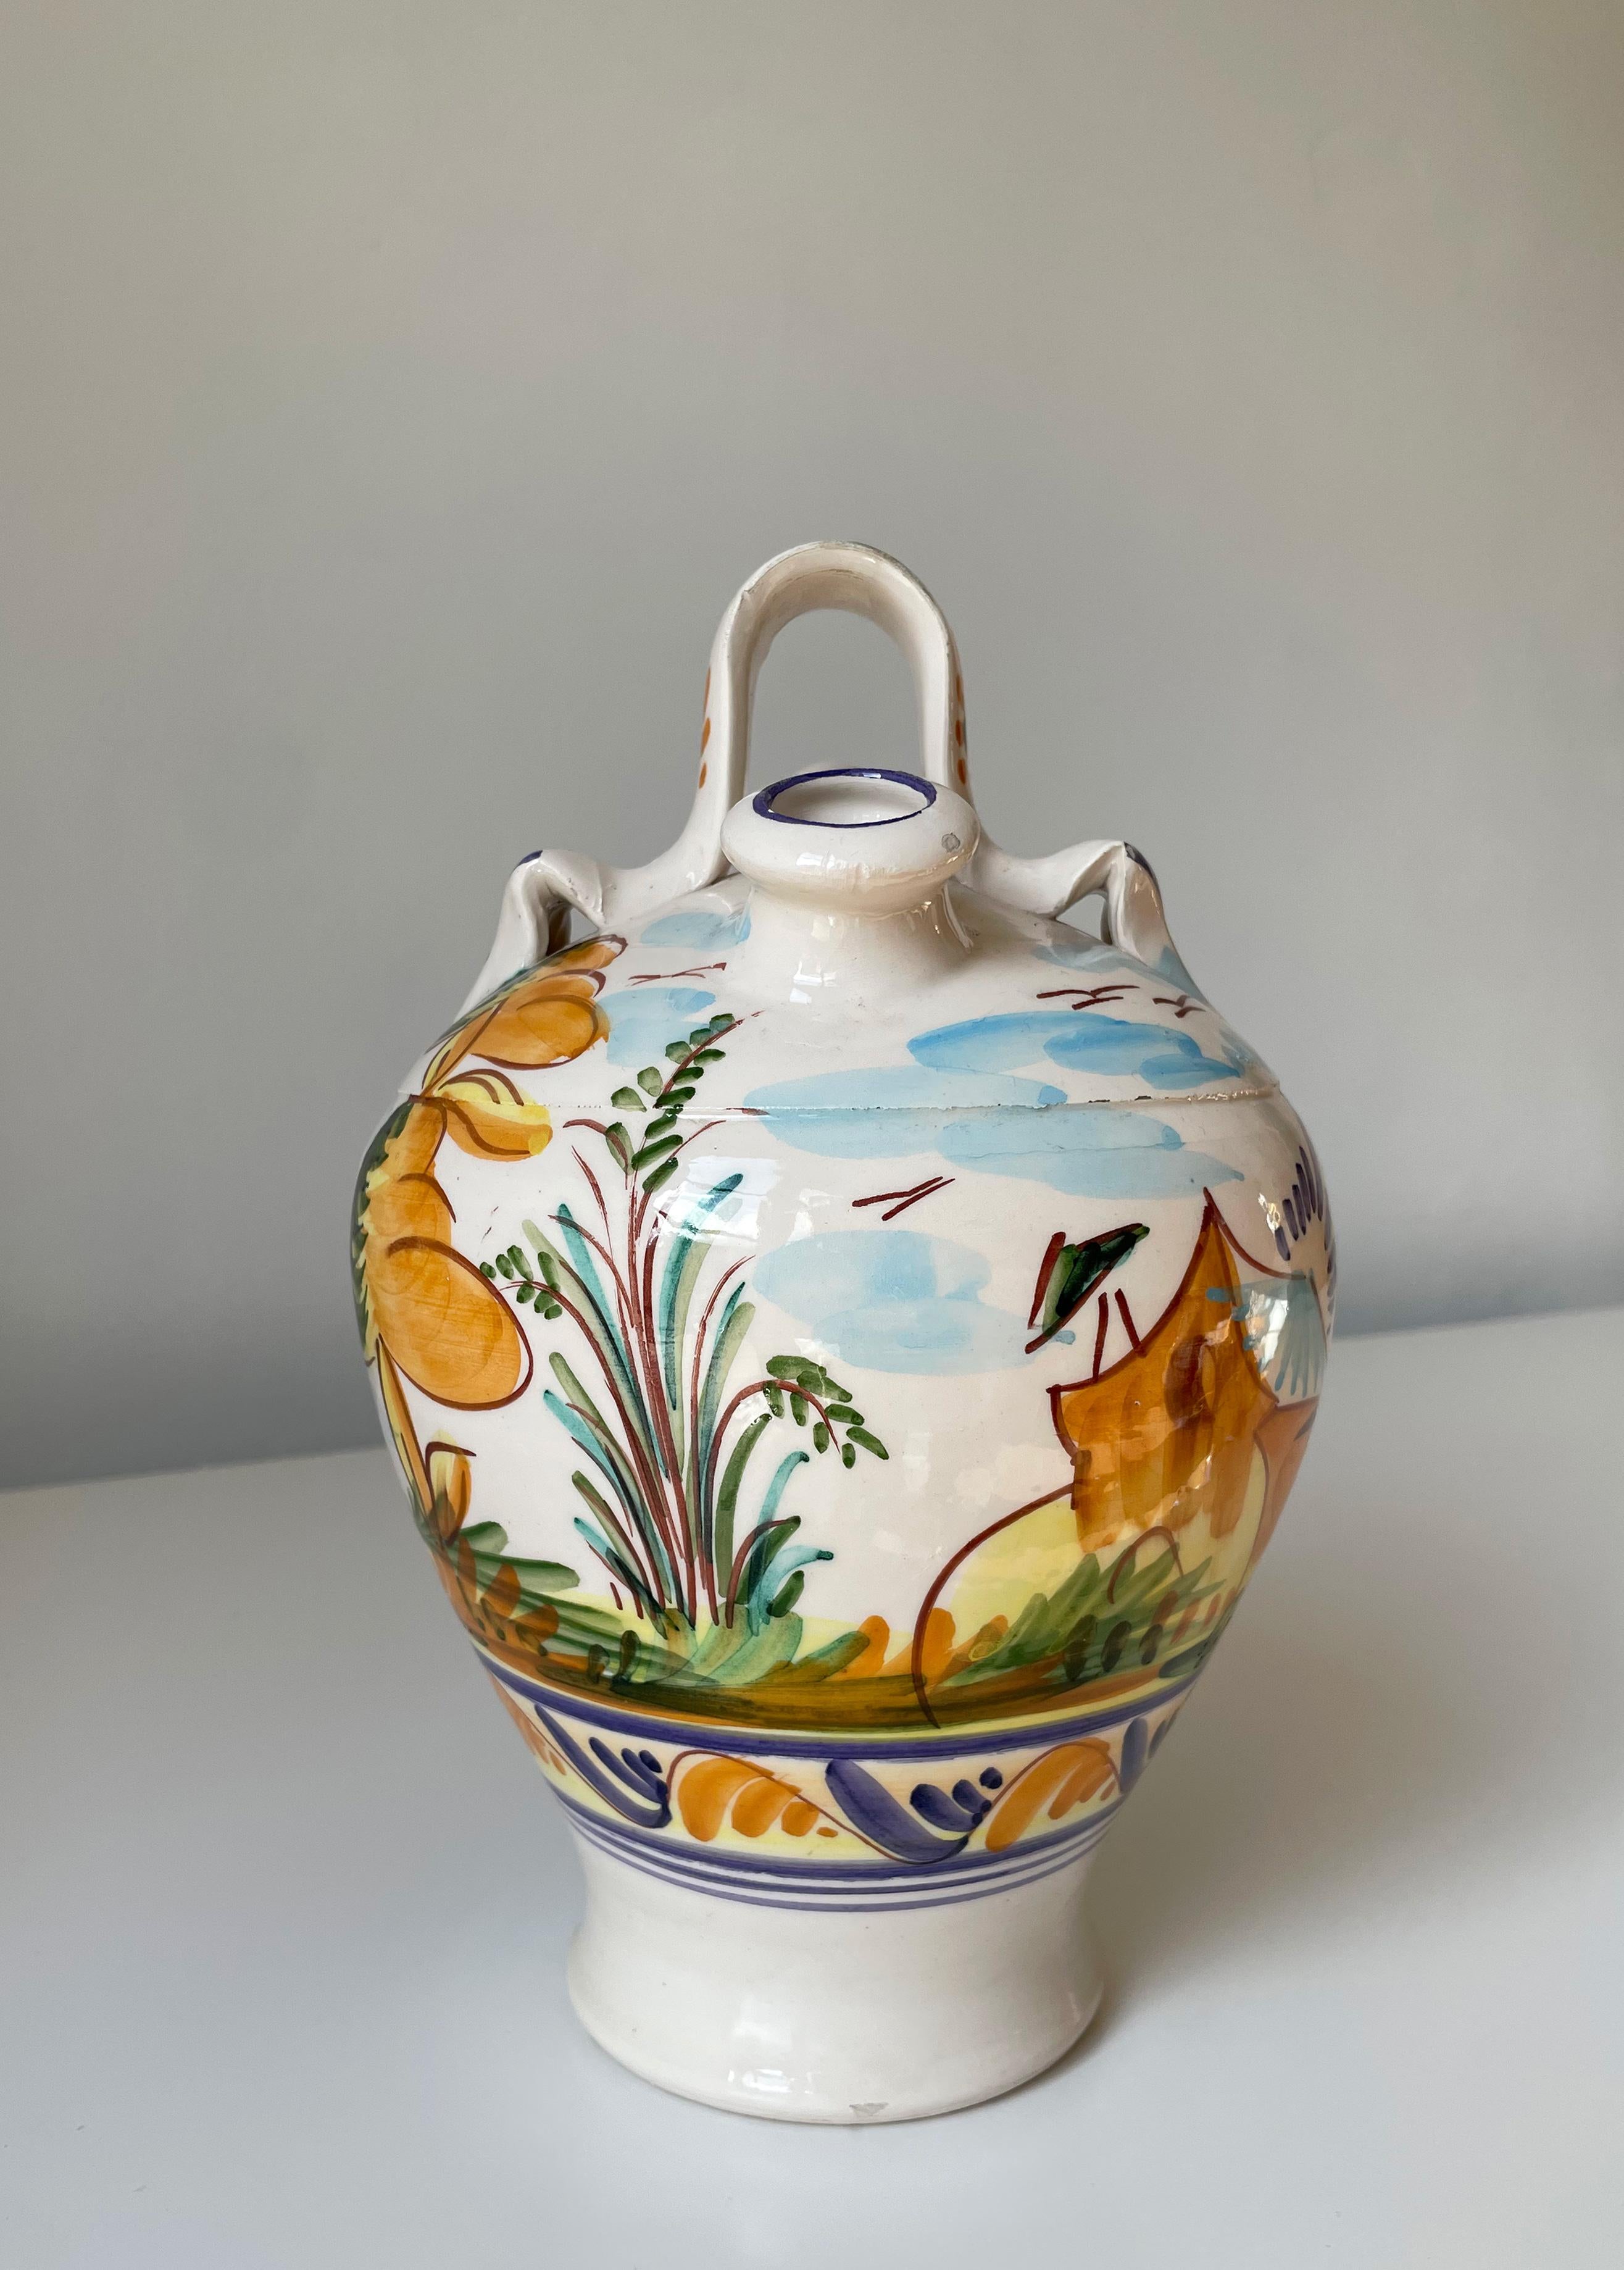 Vase-pichet en céramique italienne avec décorations florales organiques. Motifs peints à la main en jaune, orange, vert, bleu et brun sous glaçure transparente. Poignée sur le dessus et deux ouvertures - l'une très étroite, l'autre de 2,5 cm.